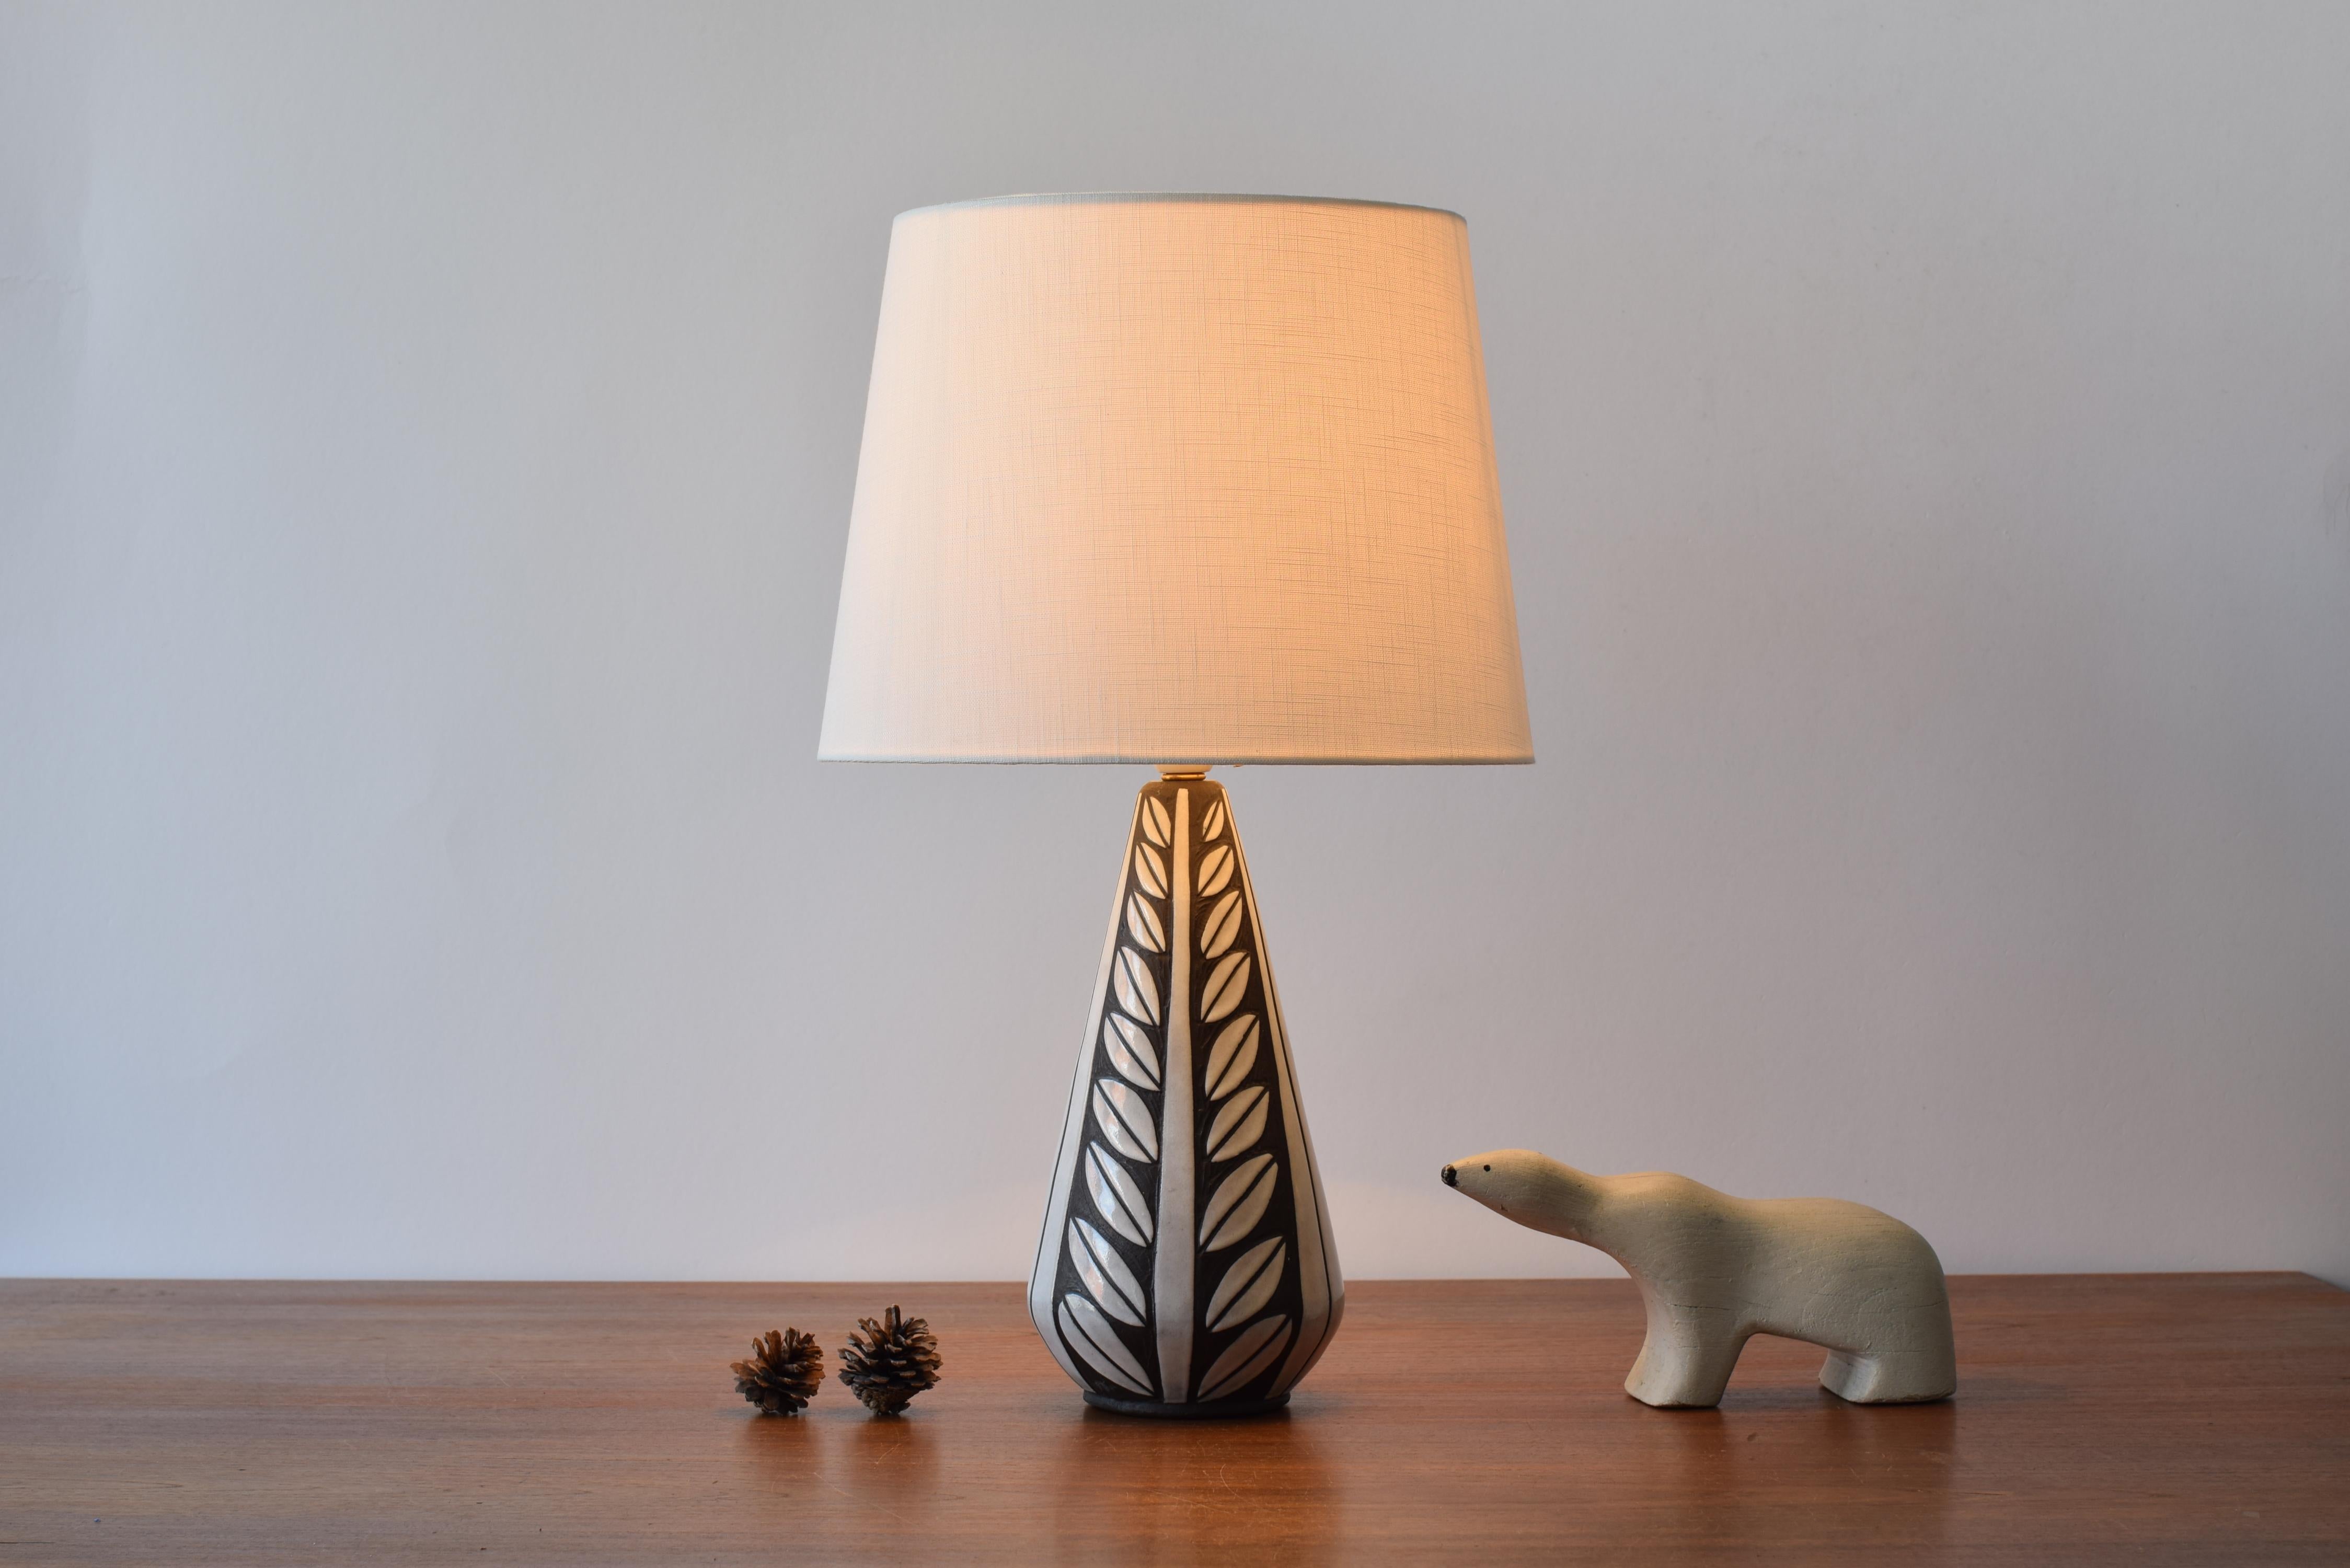 Lampe de table danoise en céramique du milieu du siècle, conçue par Marianne Starck pour Michael Andersen & Søn (MA&S).
La lampe appartient à la série Negro - également appelée série Tribal - et présente un décor de feuilles stylisées en technique